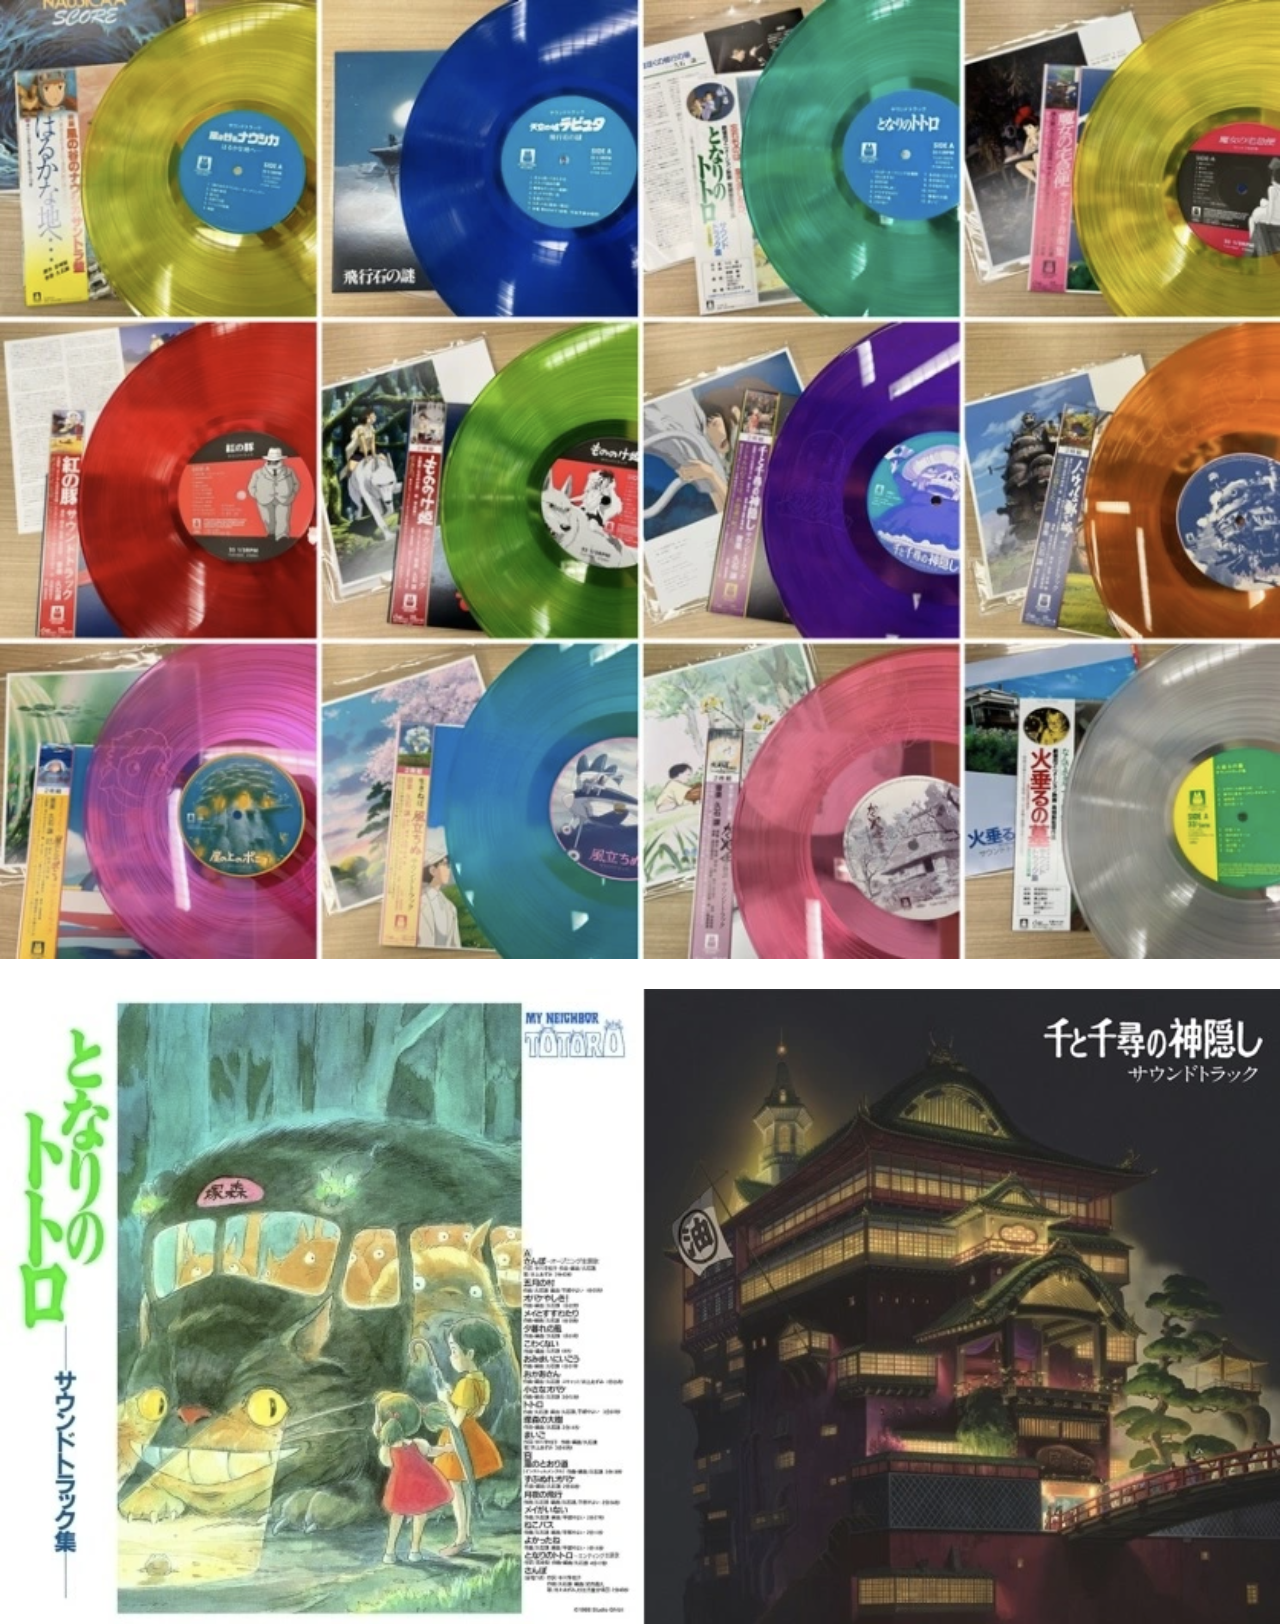 Studio Ghibli Original Soundtrack Limited LP Color Vinyl Series Joe Hisaishi  NEW